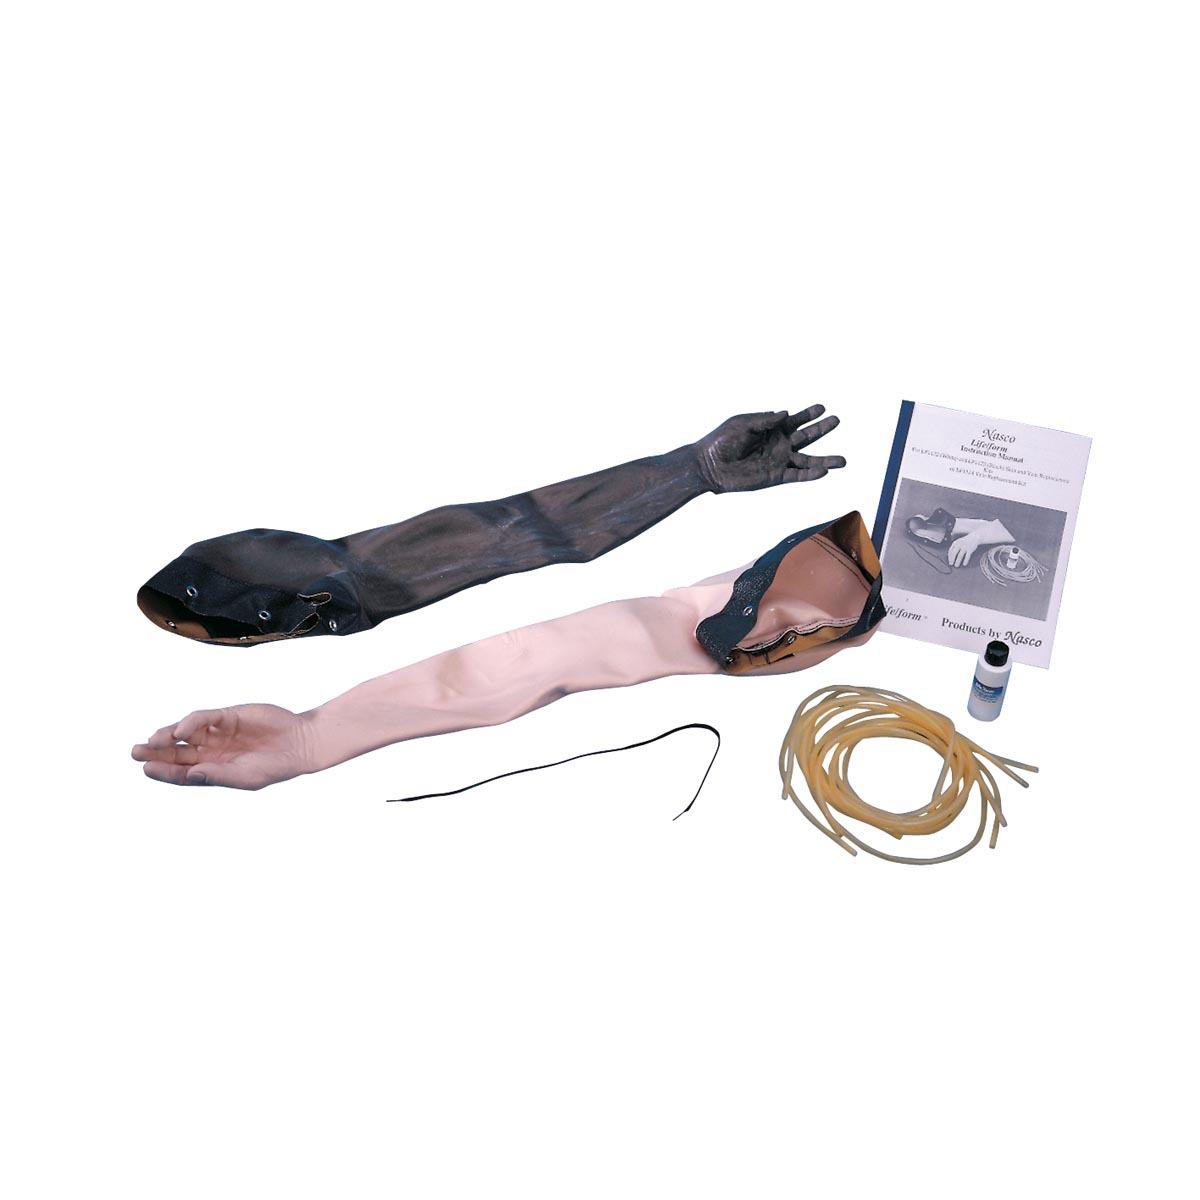 Усовершенствованный макет руки для освоения навыков венепункции и инъекций: сменный комплект «Кожа и вены», светлая кожа